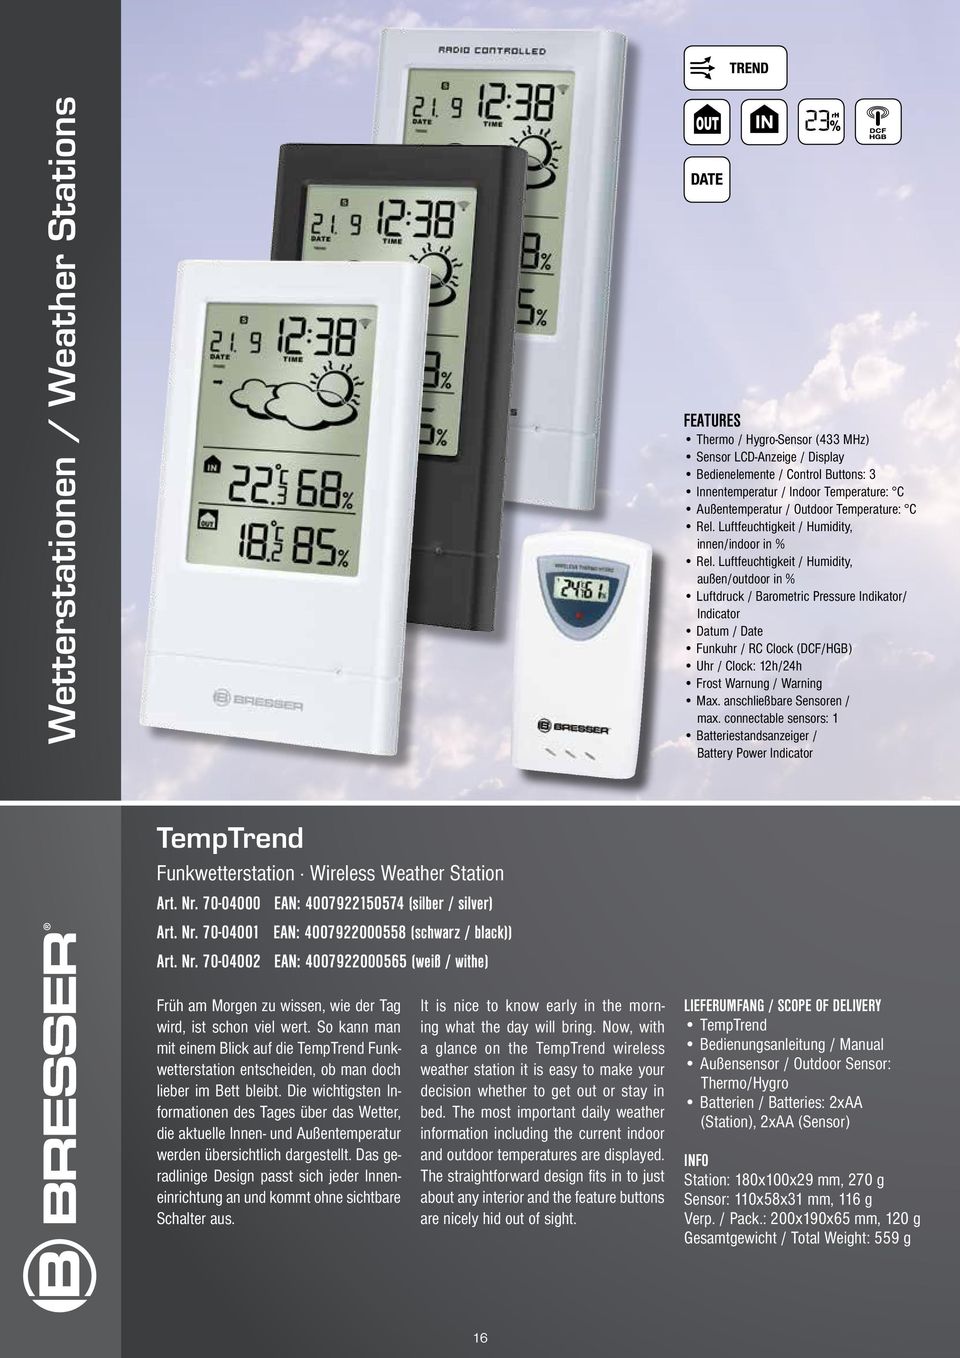 Luftfeuchtigkeit / Humidity, außen/outdoor in % Luftdruck / Barometric Pressure Indikator/ Indicator Datum / Date Funkuhr / RC Clock (DCF/HGB) Uhr / Clock: 12h/24h Frost Warnung / Warning Max.